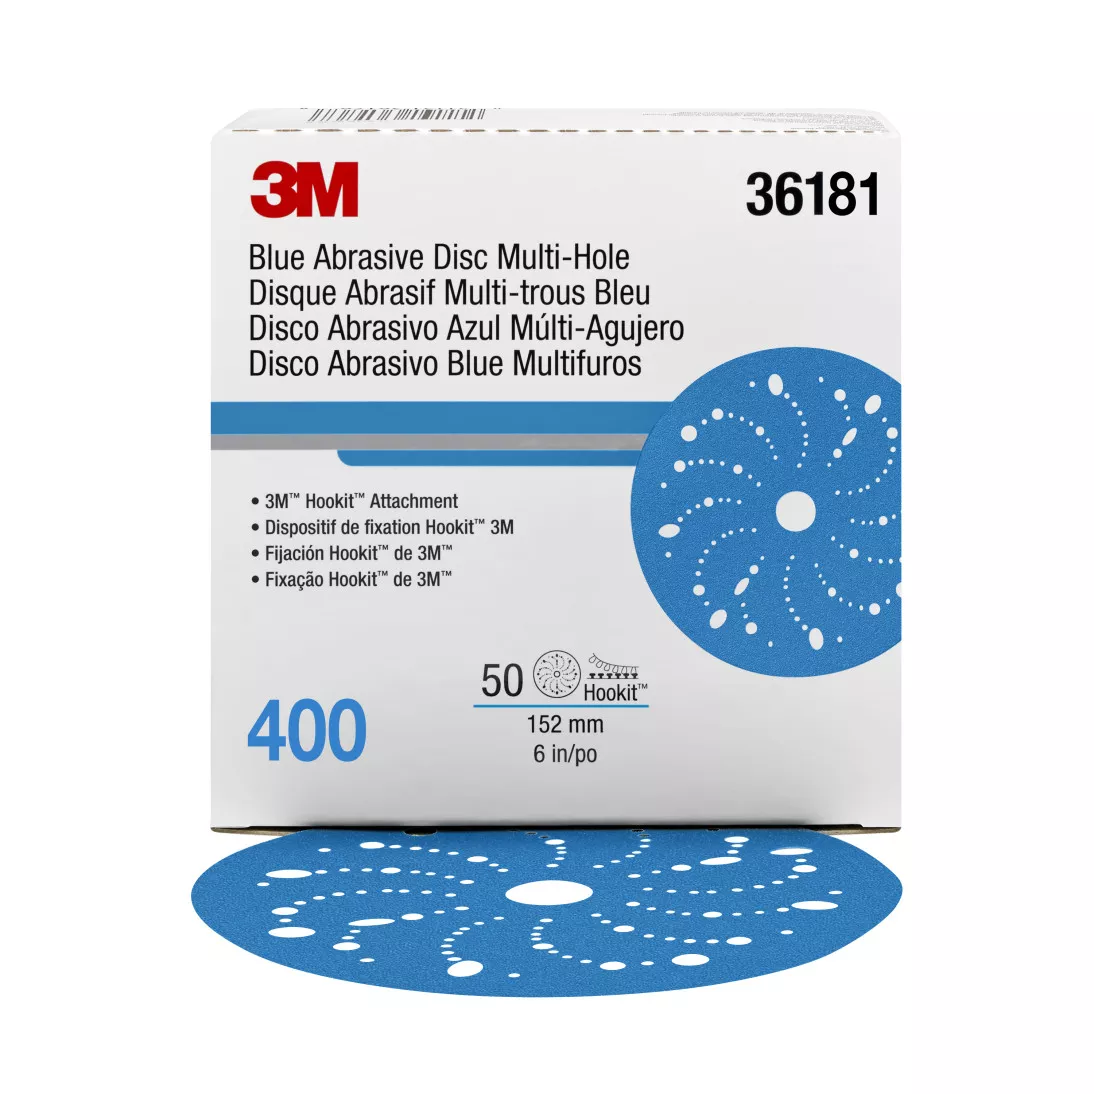 3M™ Hookit™ Blue Abrasive Disc 321U Multi-hole, 36181, 6 in, 400, 50
discs per carton, 4 cartons per case